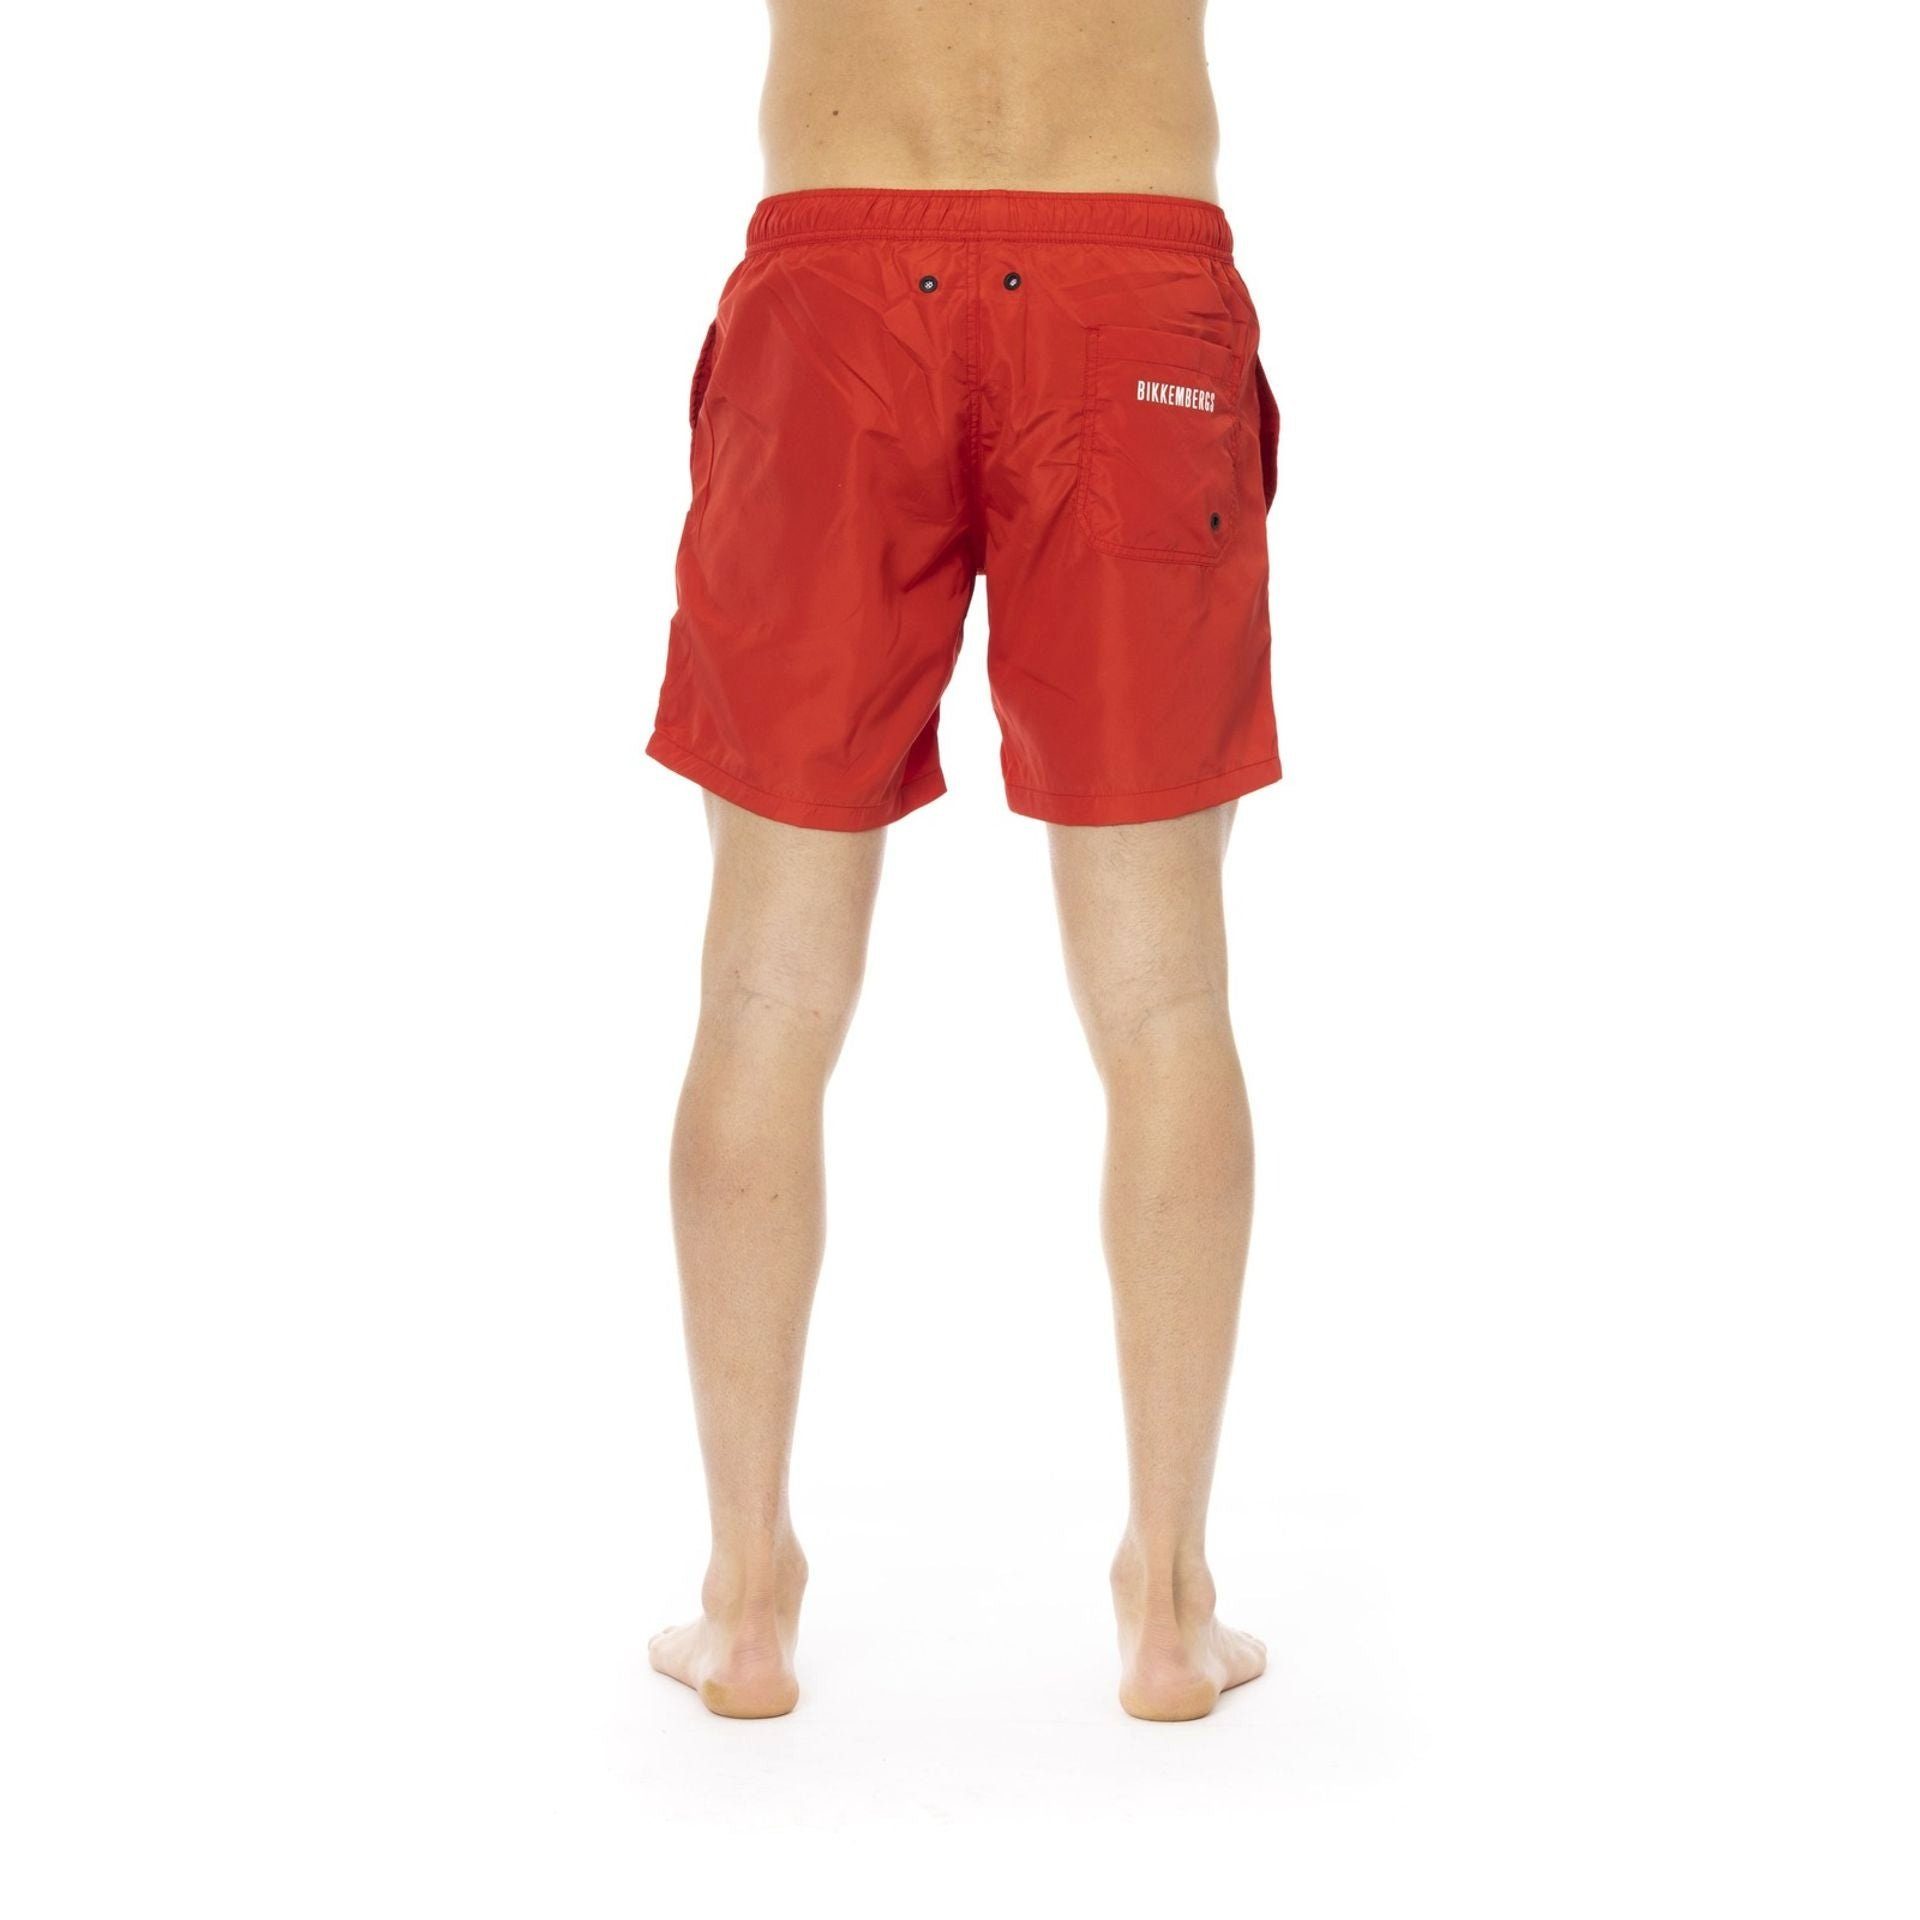 Herren deinen Boxer-Badehose für Sommerurlaub Rot Bikkembergs Must-Have Boxershorts, Beachwear, Bikkembergs